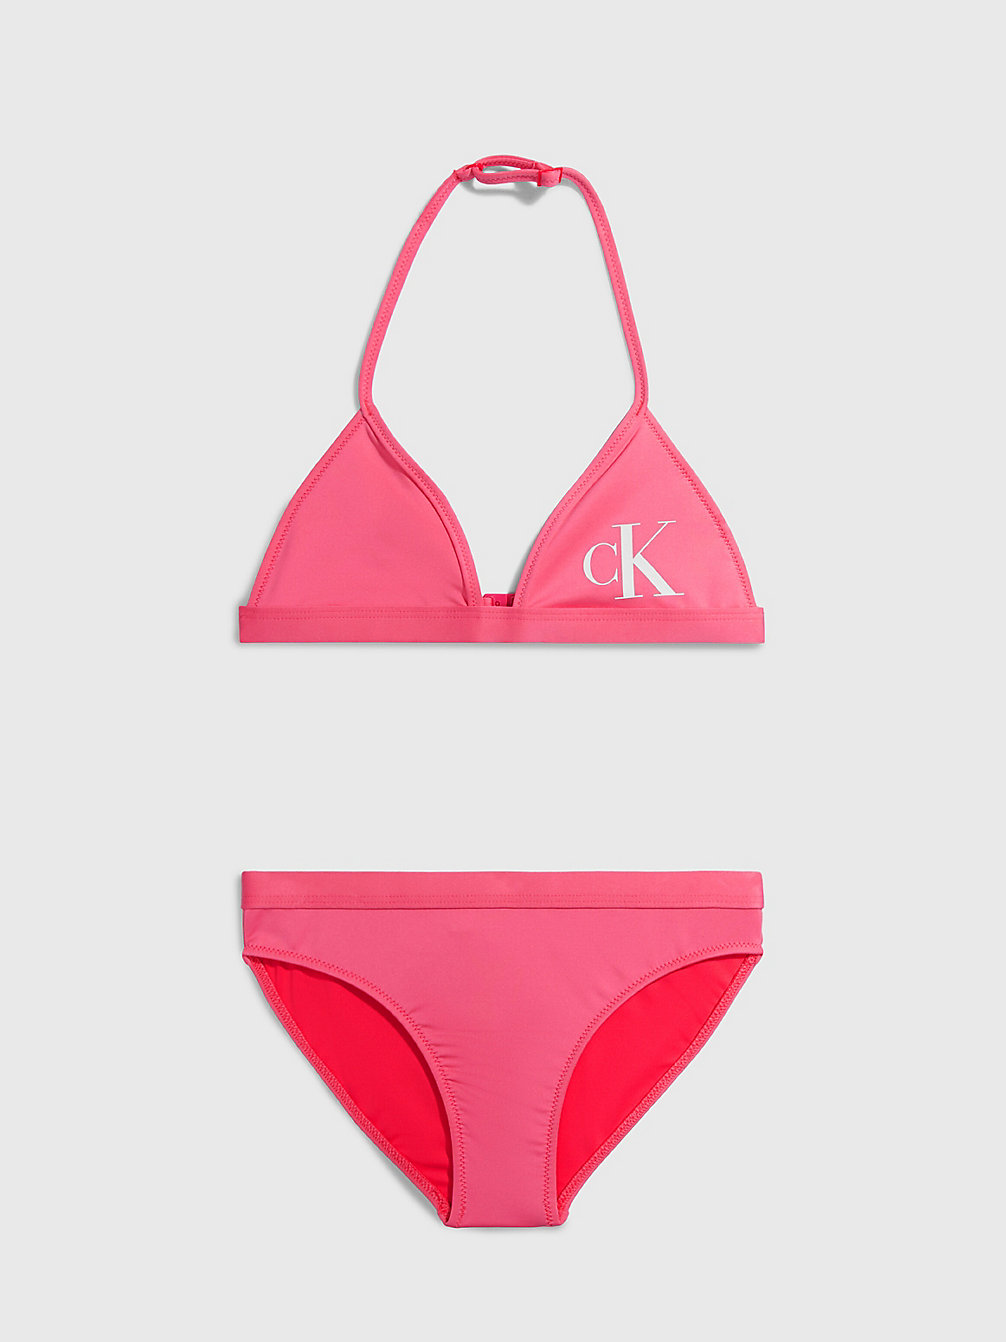 PINK FLASH Girls Triangle Bikini Set - CK Monogram undefined girls Calvin Klein